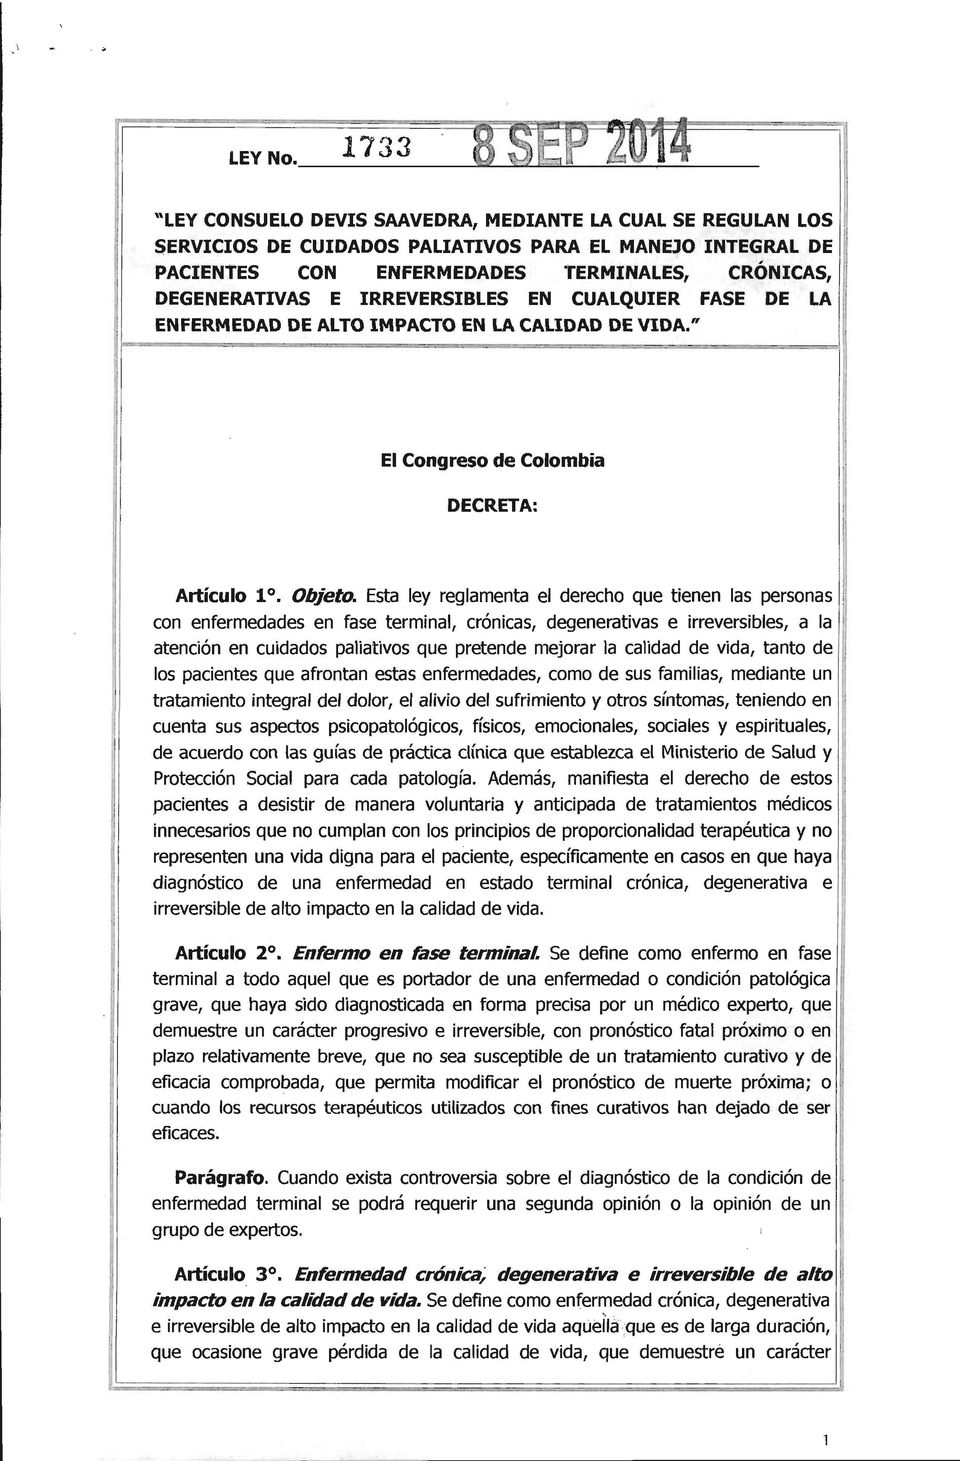 IRREVERSIBLES EN CUALQUIER FASE 'DE LA I ENFERMEDAD DE ALTO IMPACTO EN LA CALIDAD DE VIDA." El Congreso de Colombia DECRETA: Artículo 10. Objeto.